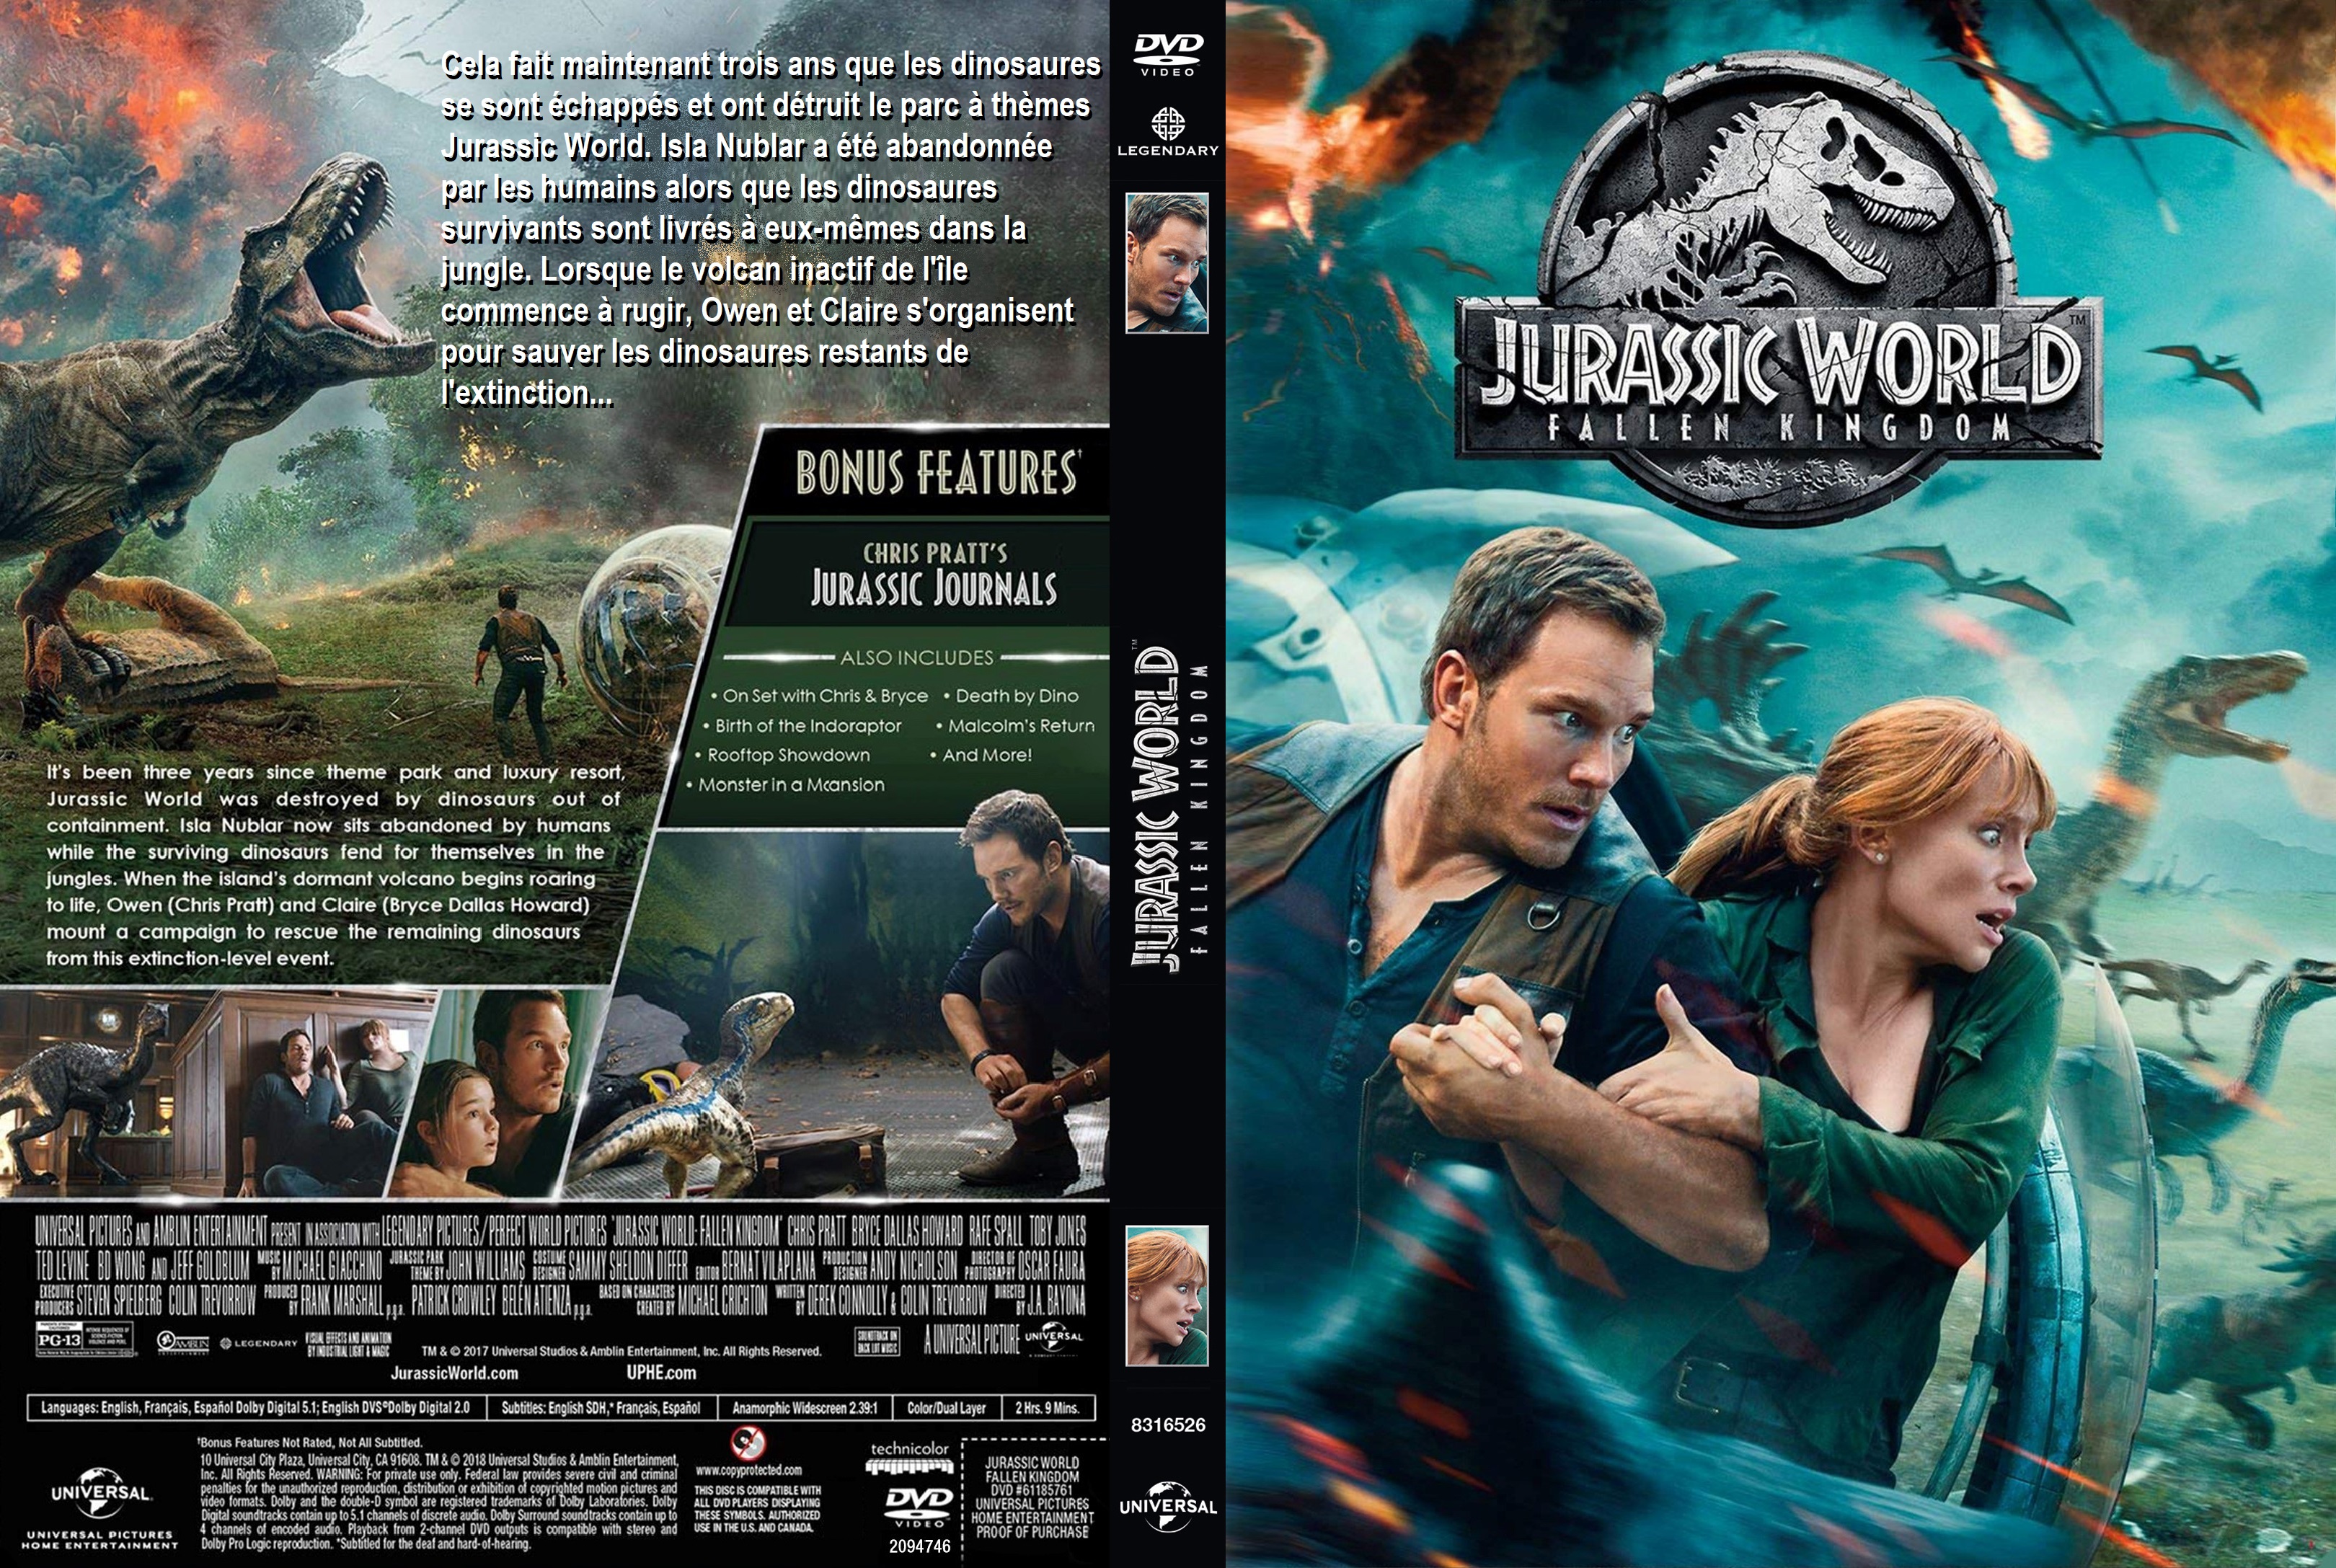 Jaquette DVD Jurassic World Fallen Kingdom custom